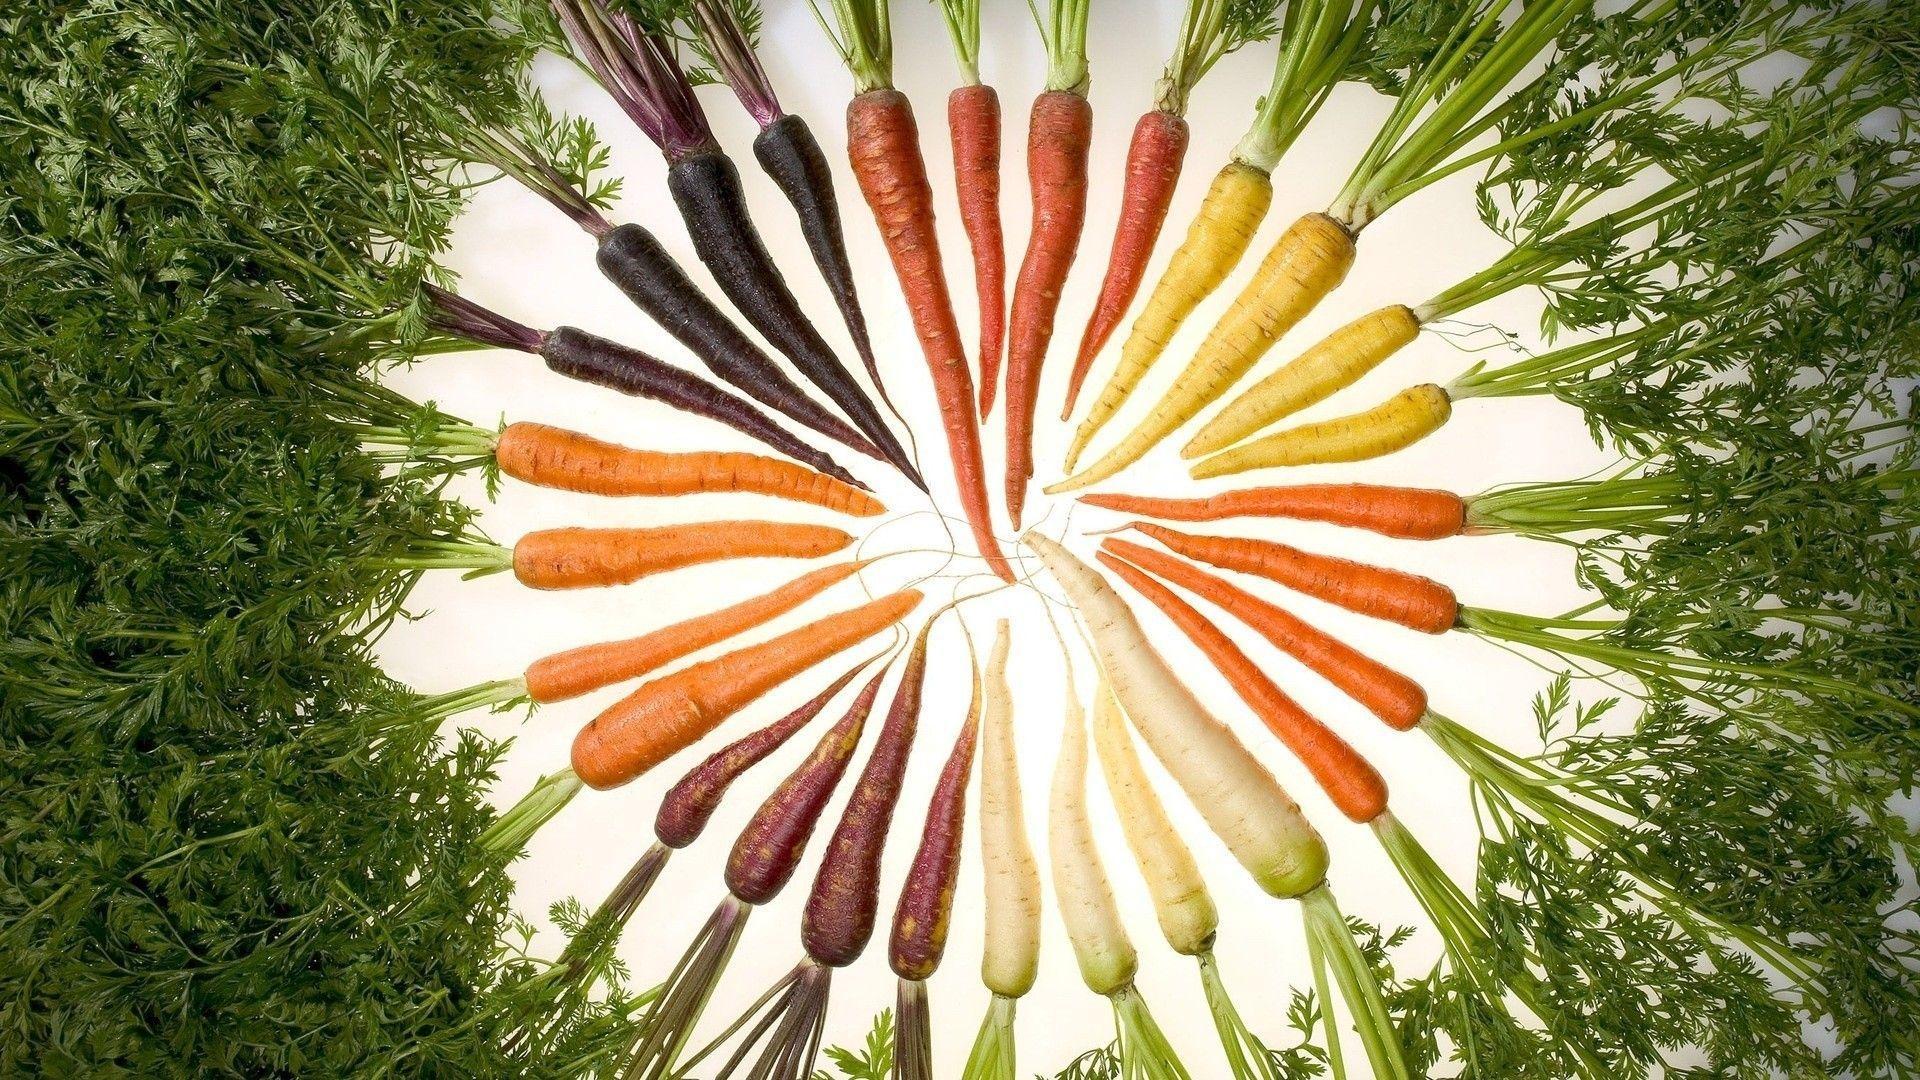 Carrots vegetables wallpaper. PC